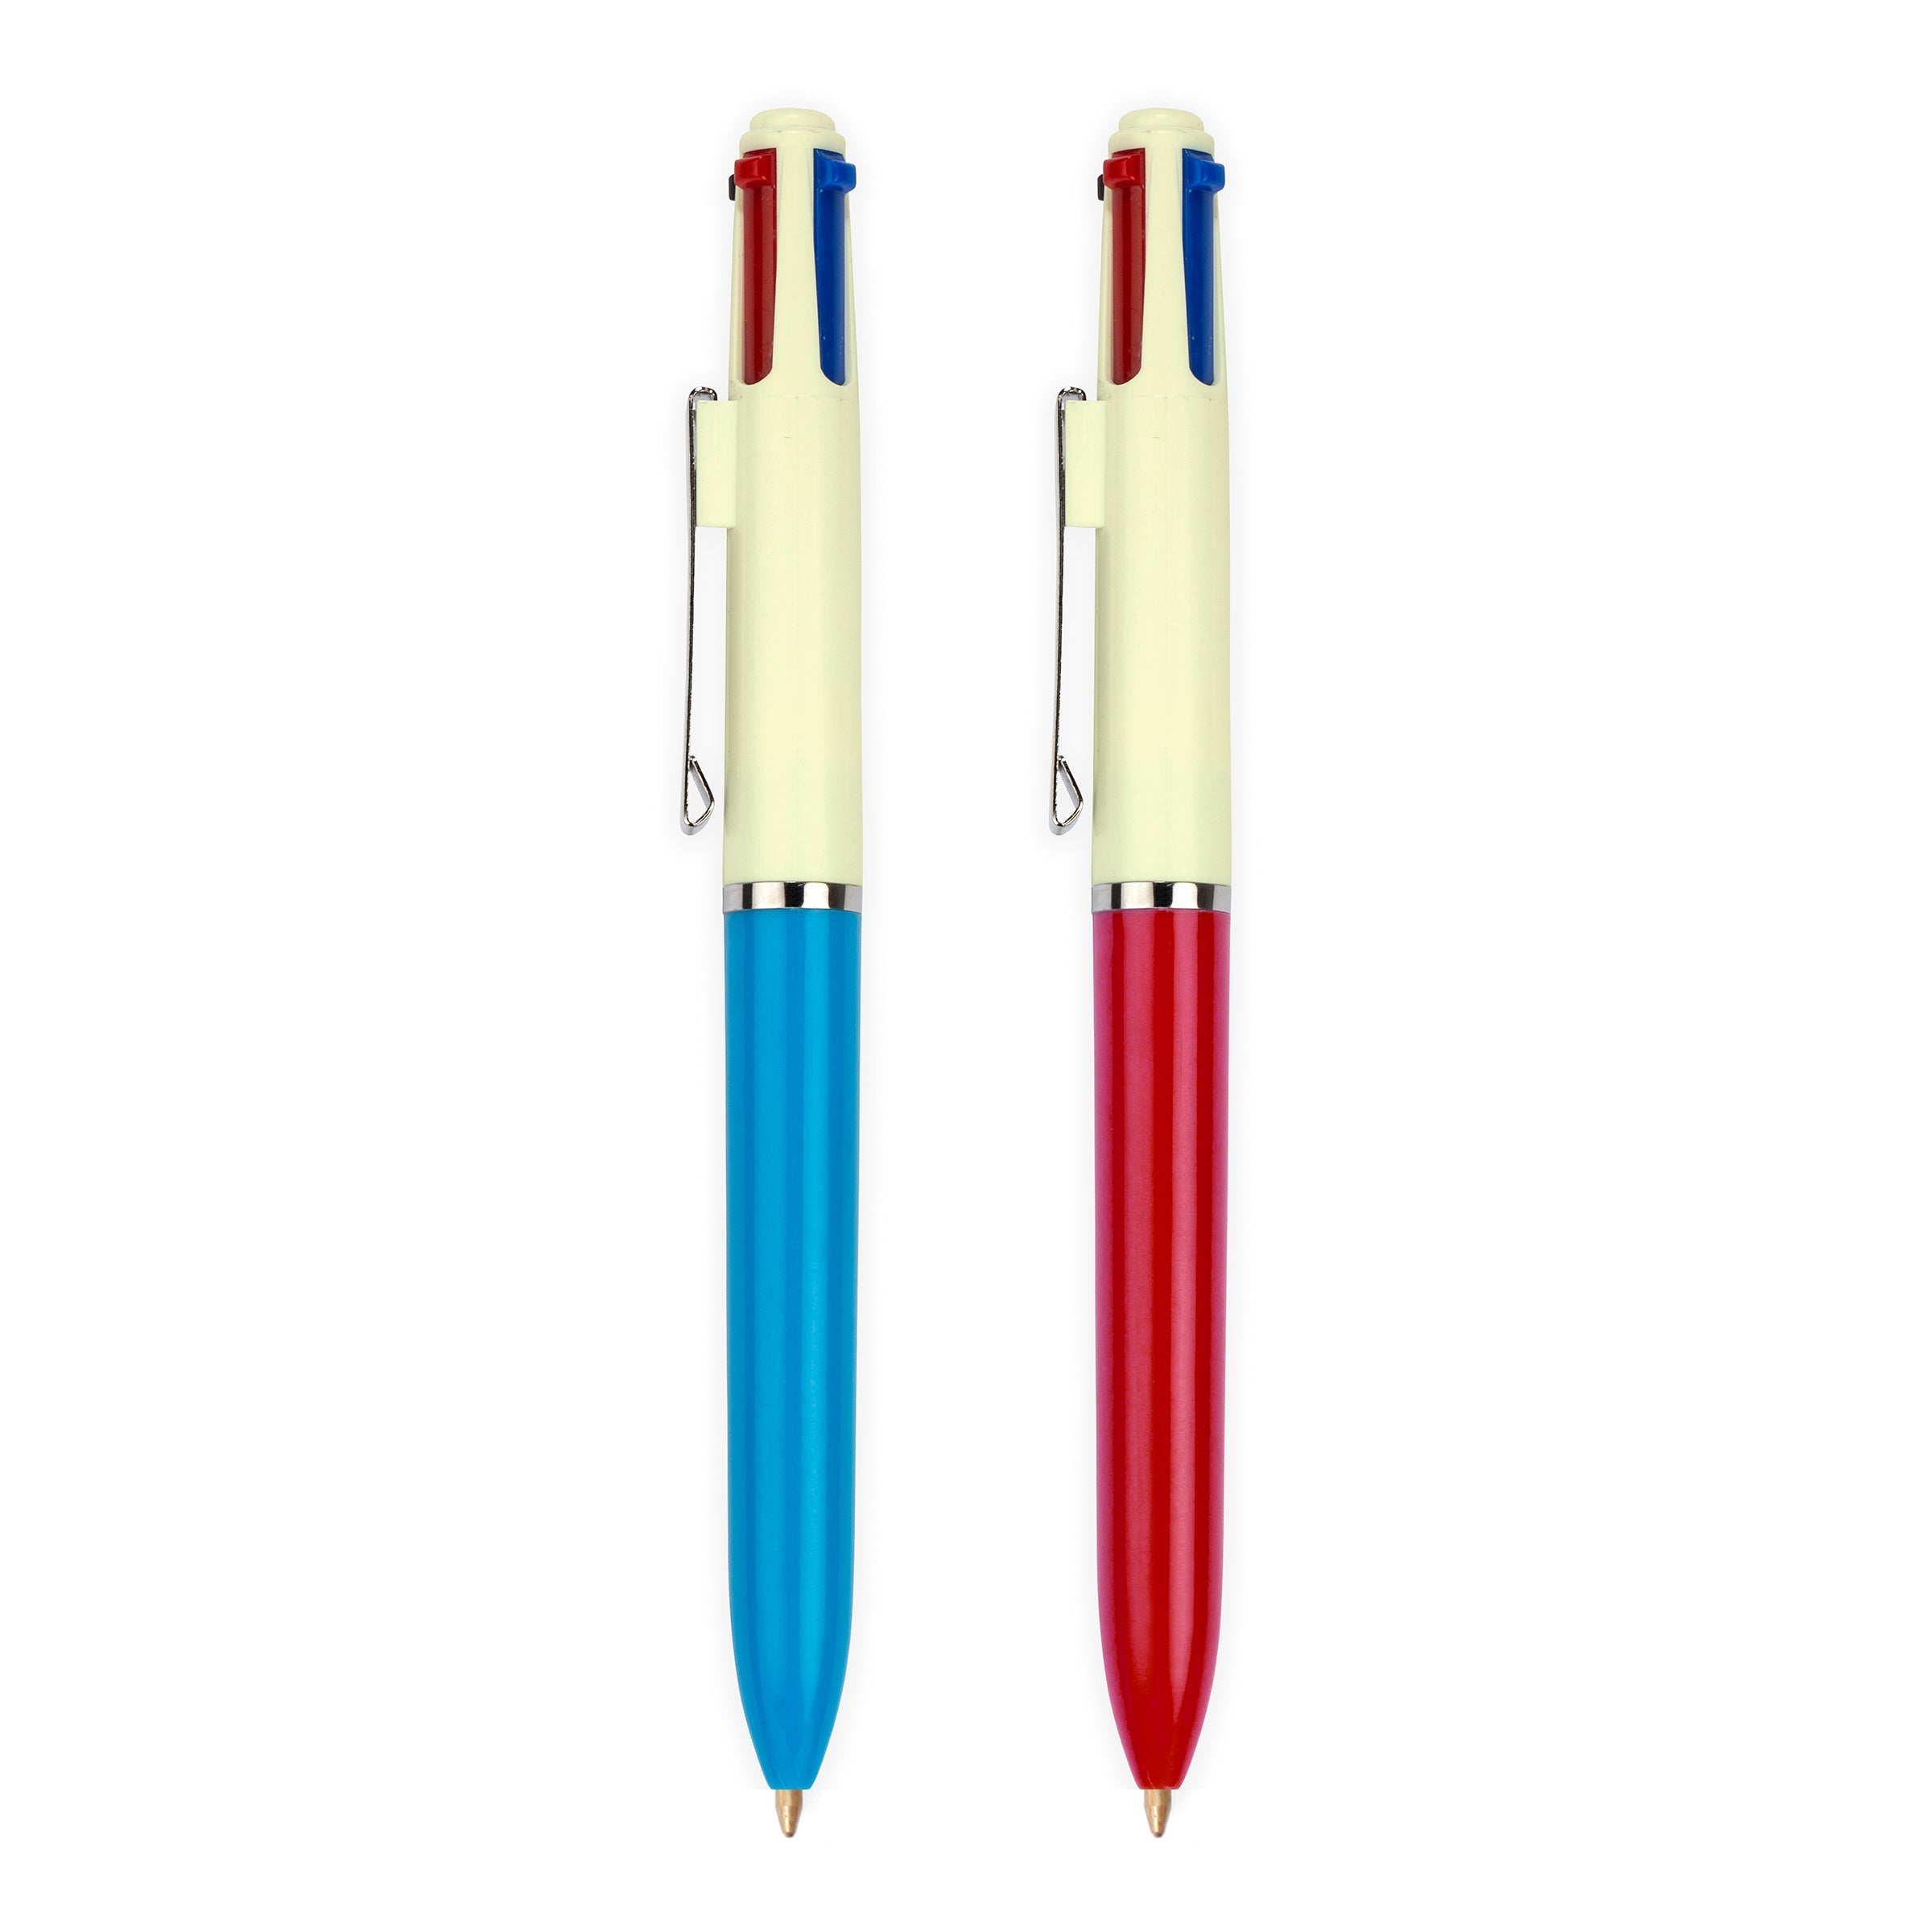 Dog and Cat Multicolor Pens – Kikkerland Design Inc